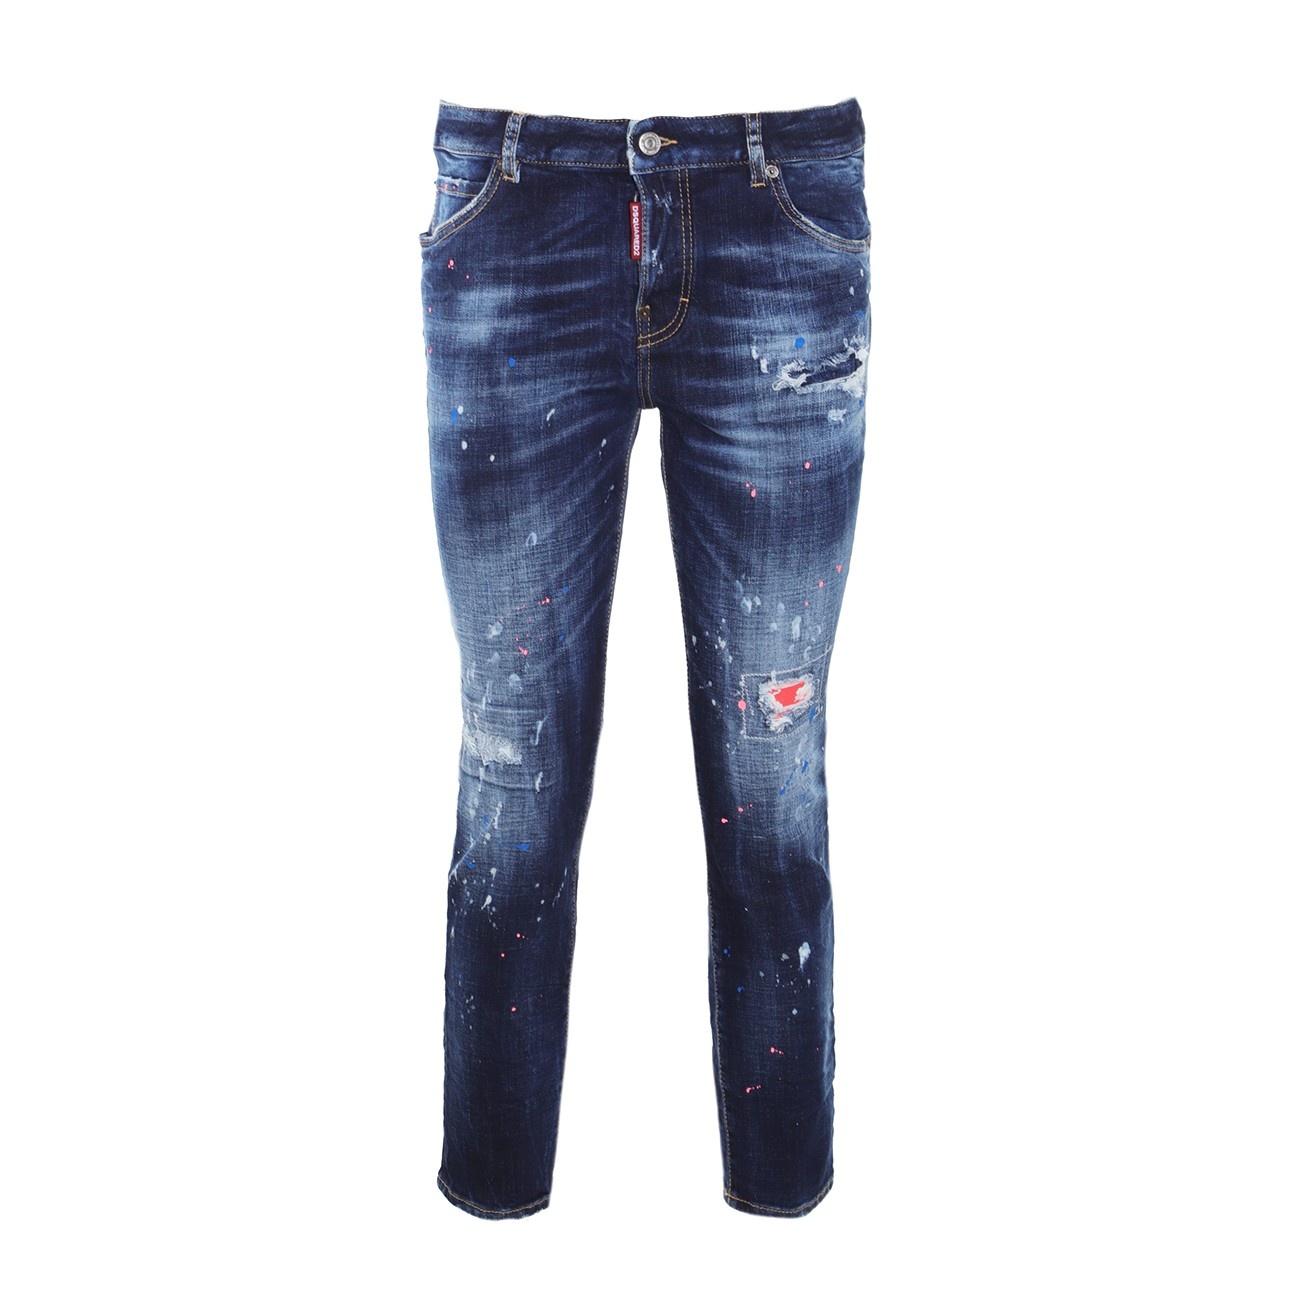 blue cotton jeans - 1